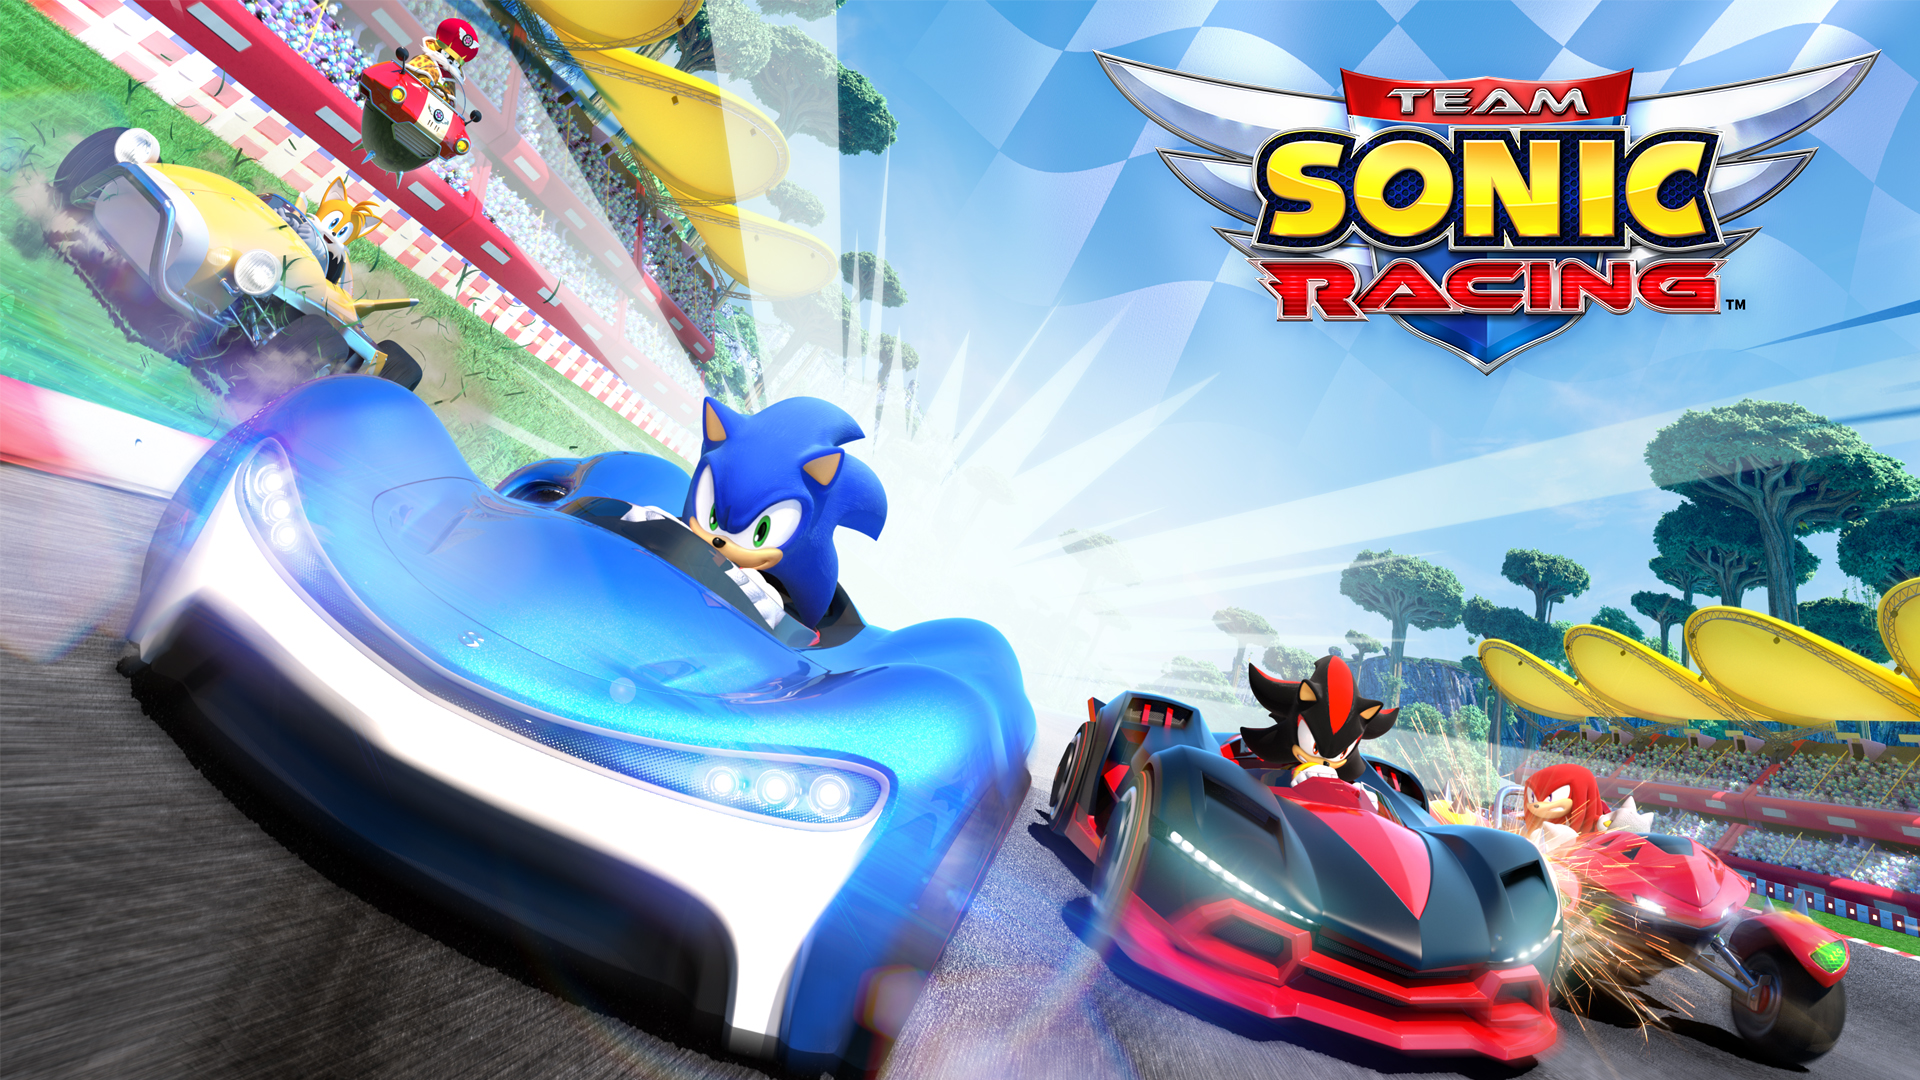 Analisi tecnica della versione Switch di Team Sonic Racing